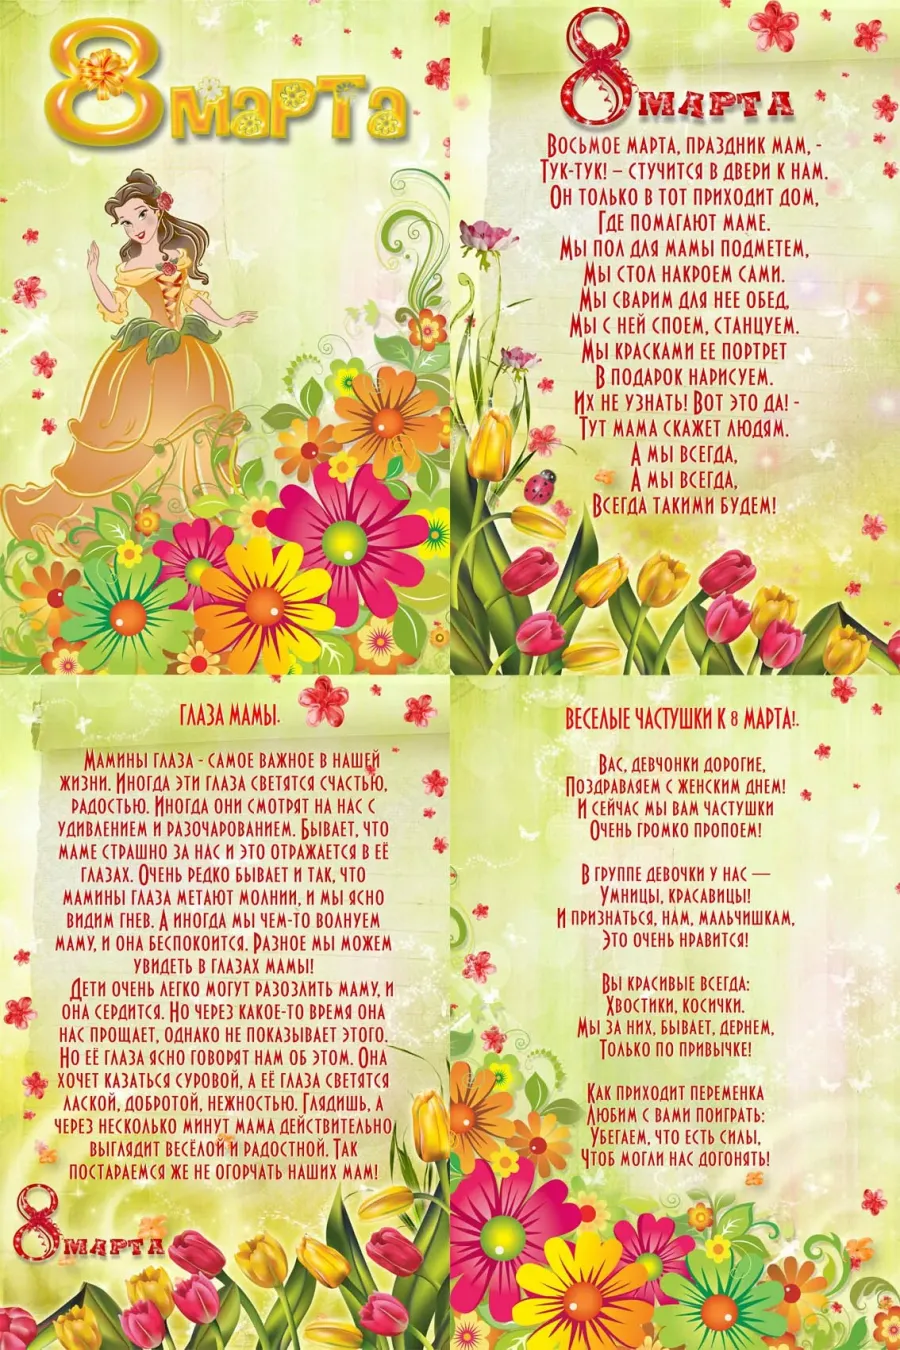 Стихи о 8 марте для детей. Детское стихотворение к 8 марту